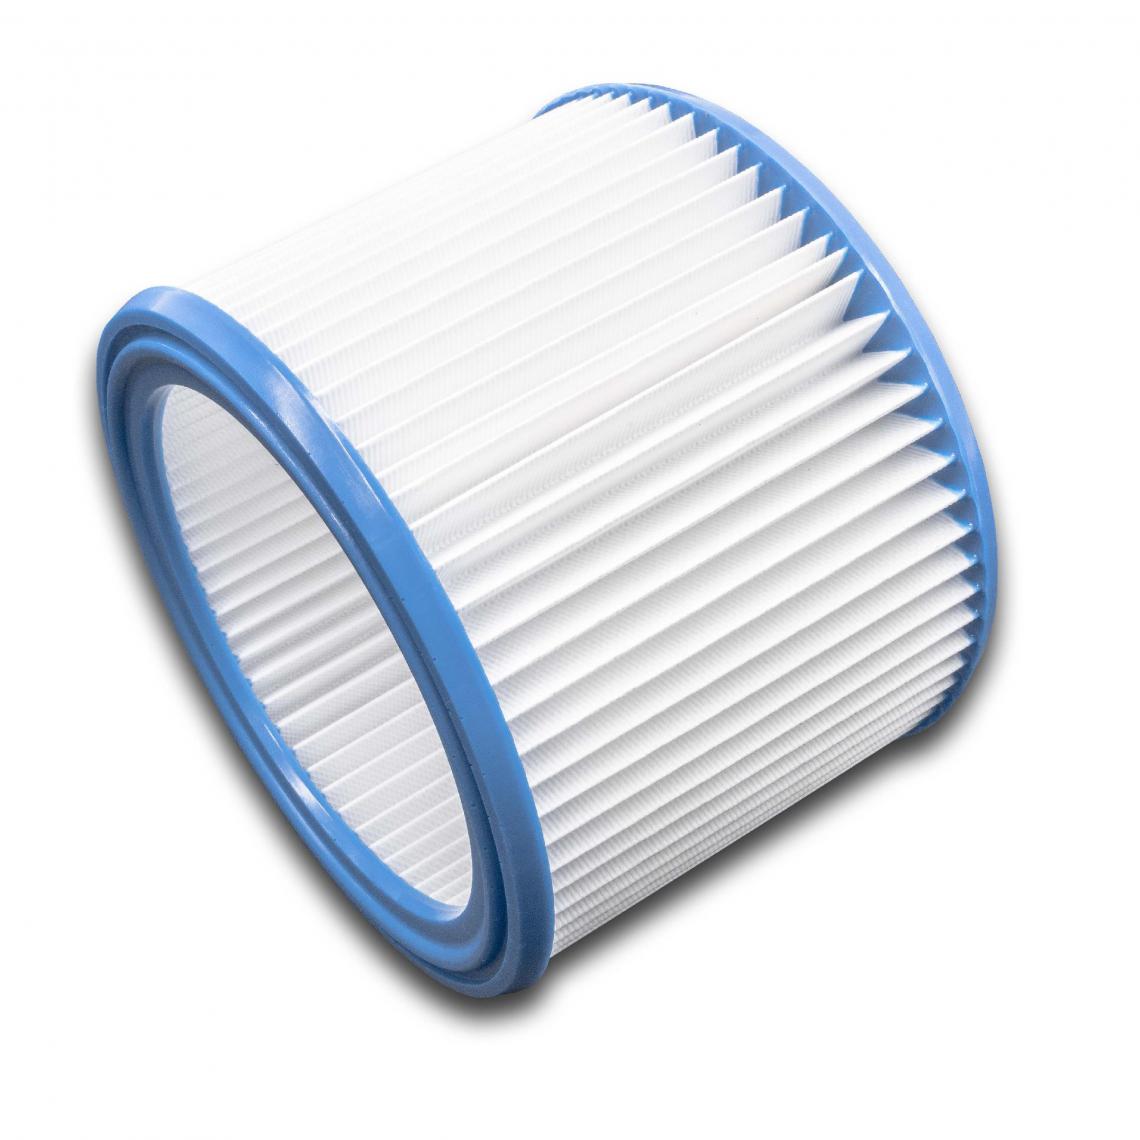 Vhbw - vhbw Set de filtres 10x Filtre plissé compatible avec WAP Attix 360-21, 360-21 Clean Room, 360-2M aspirateur à sec ou humide - Filtre à cartouche - Accessoire entretien des sols